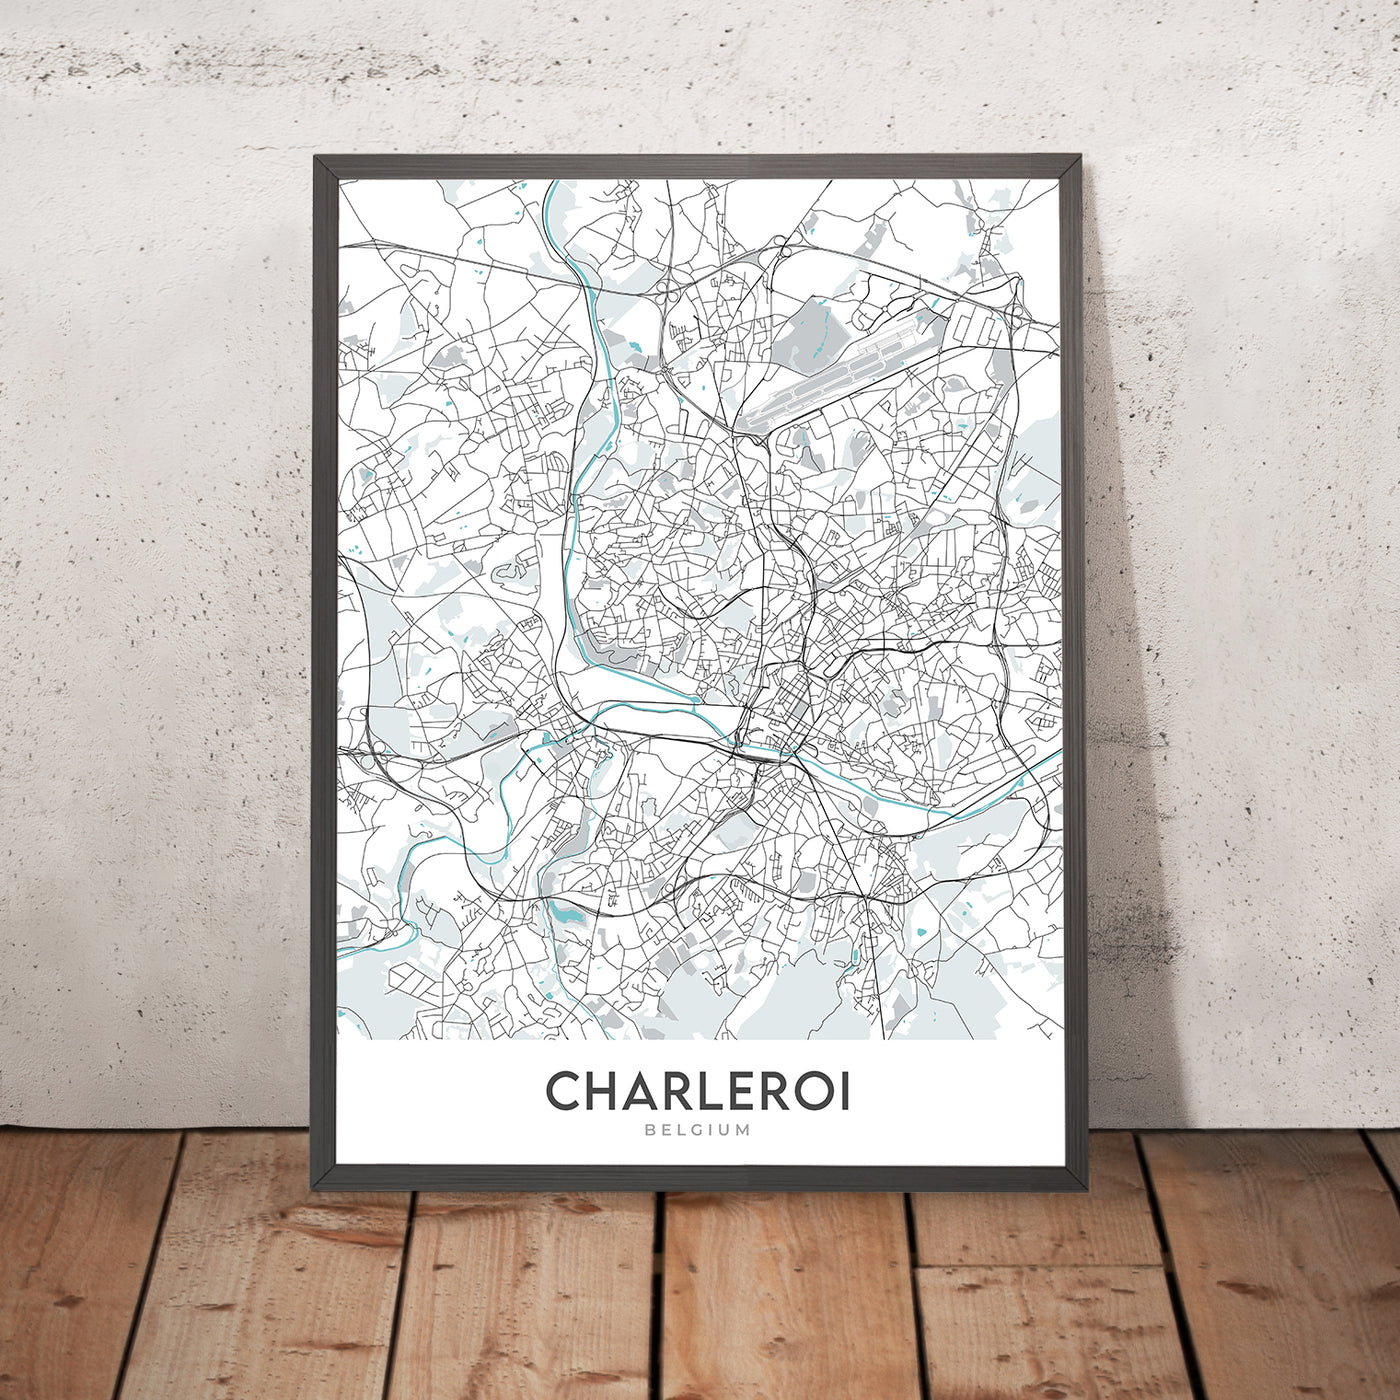 Mapa moderno de la ciudad de Charleroi, Bélgica: centro de la ciudad, aeropuerto, estadio, universidad, museo